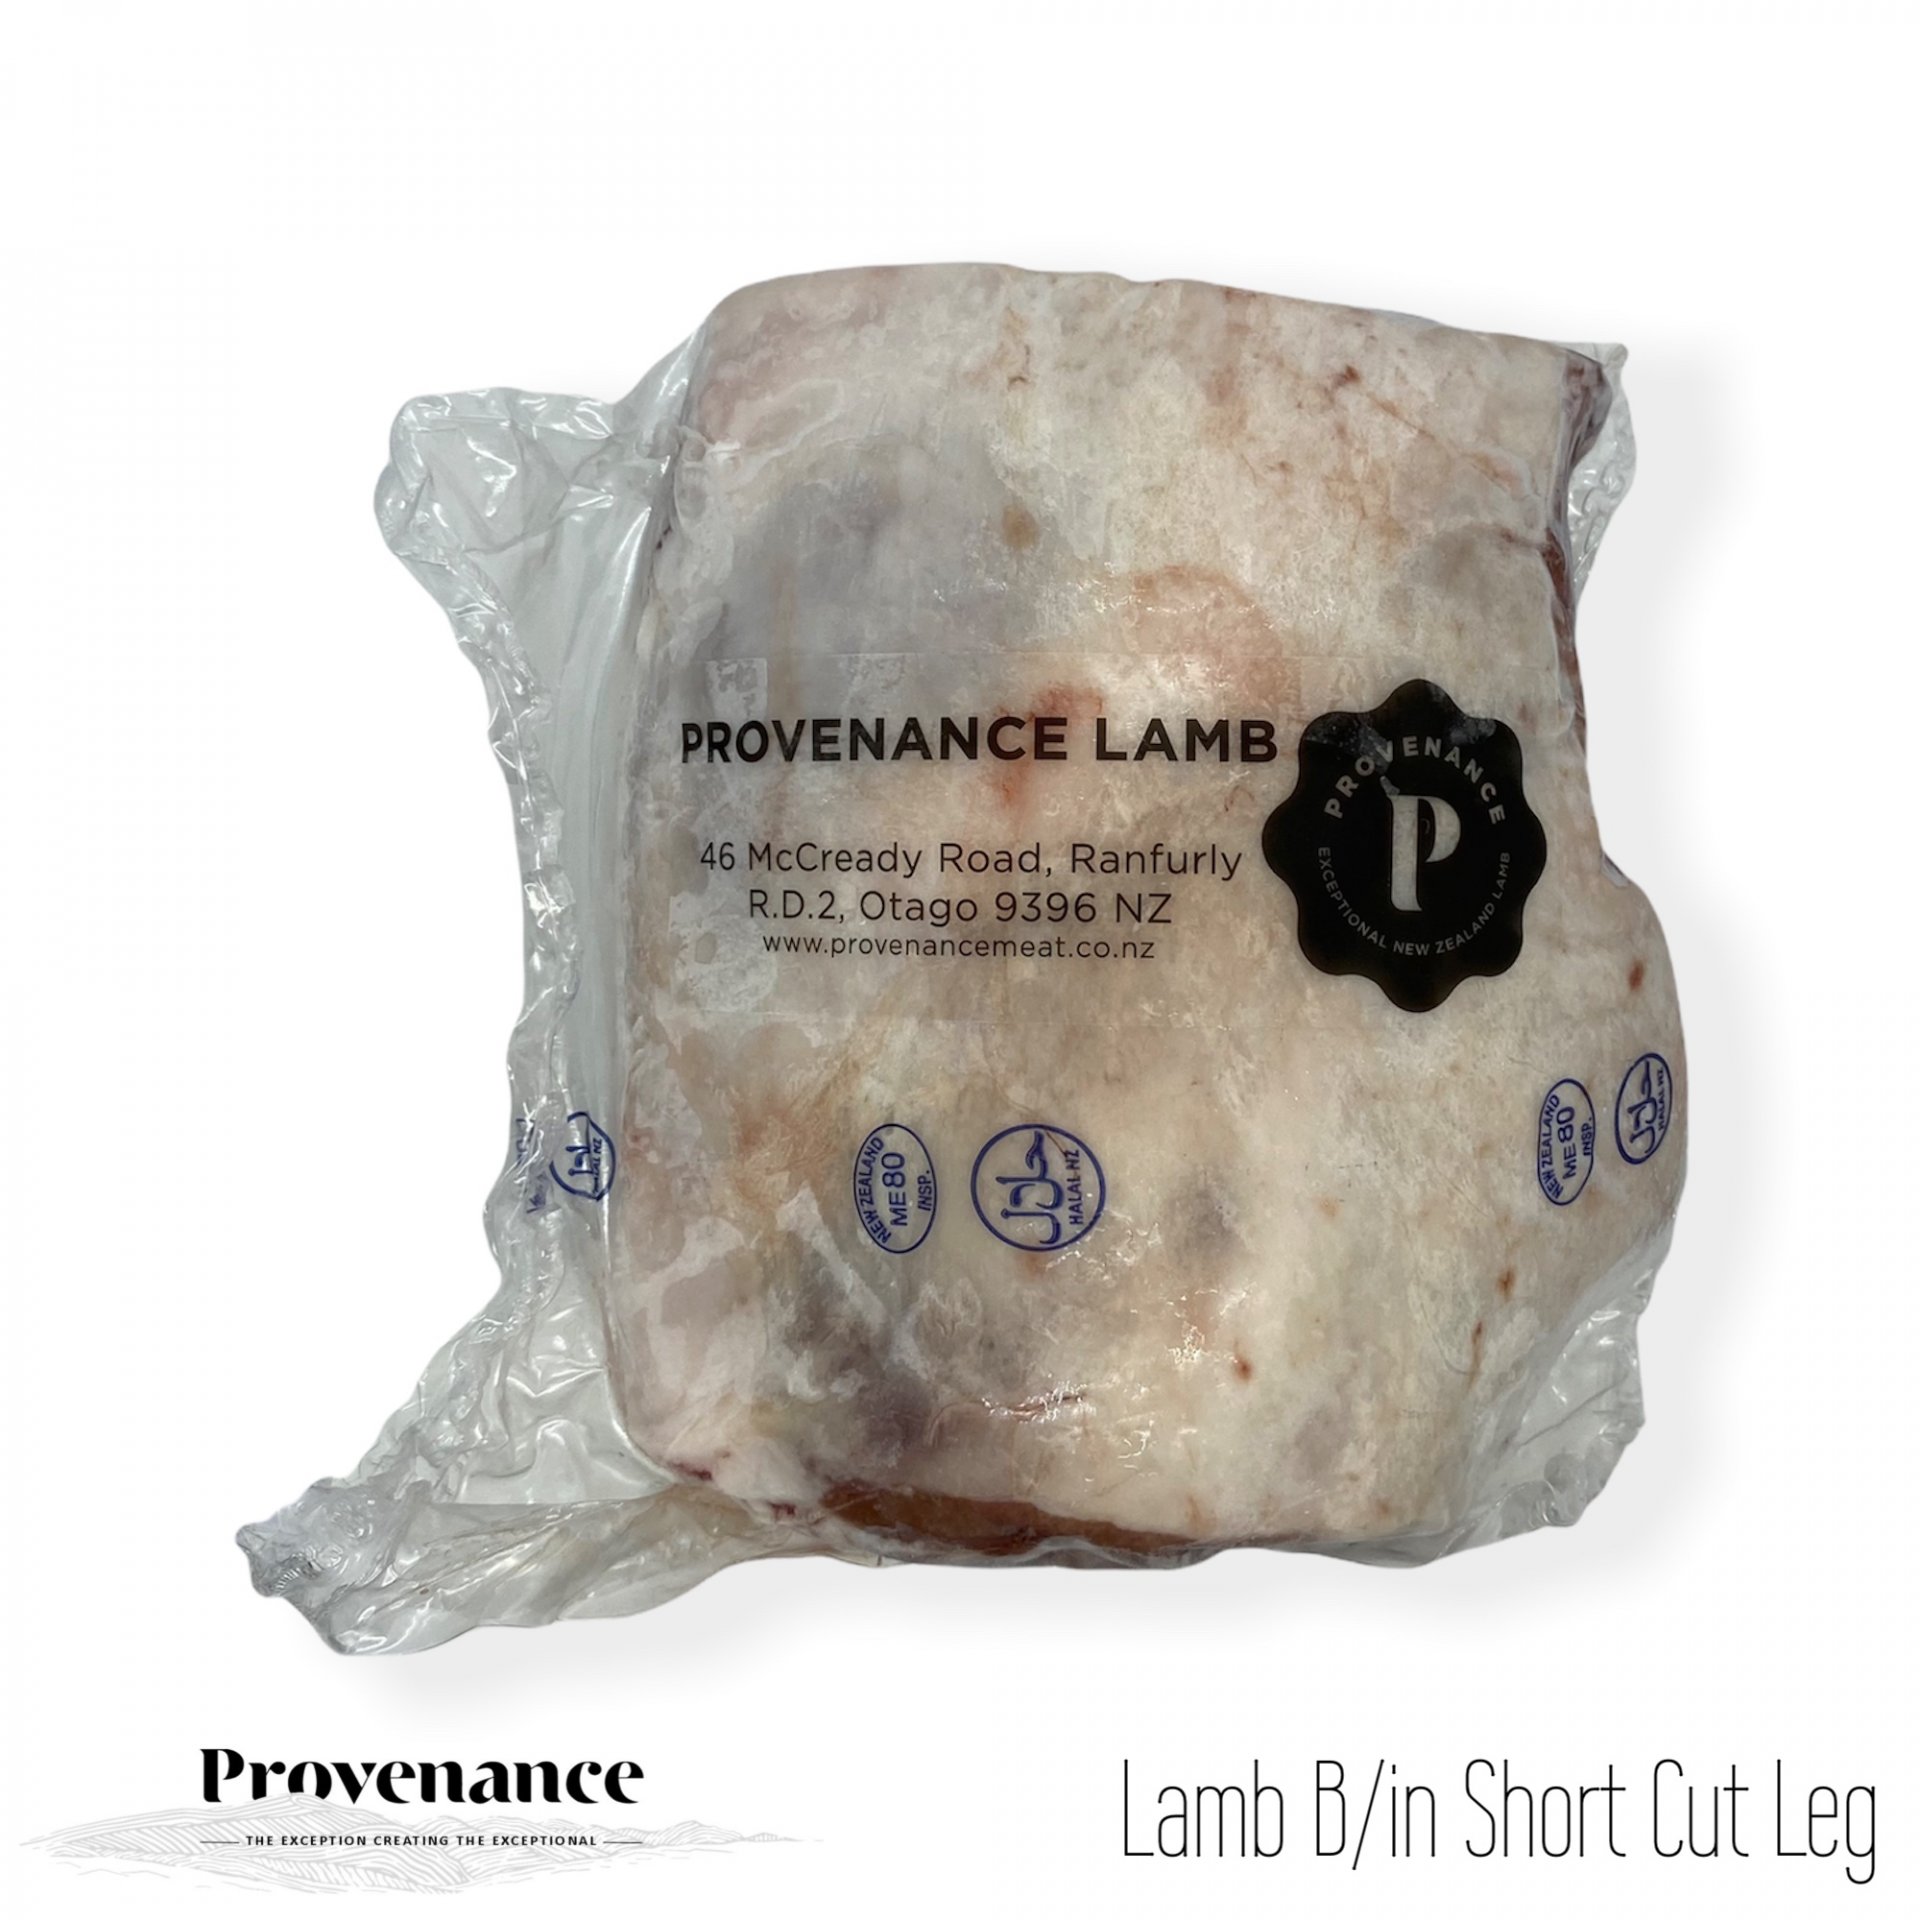 NZ Lamb B/in Short cut Leg (1.3-1.8 kg)